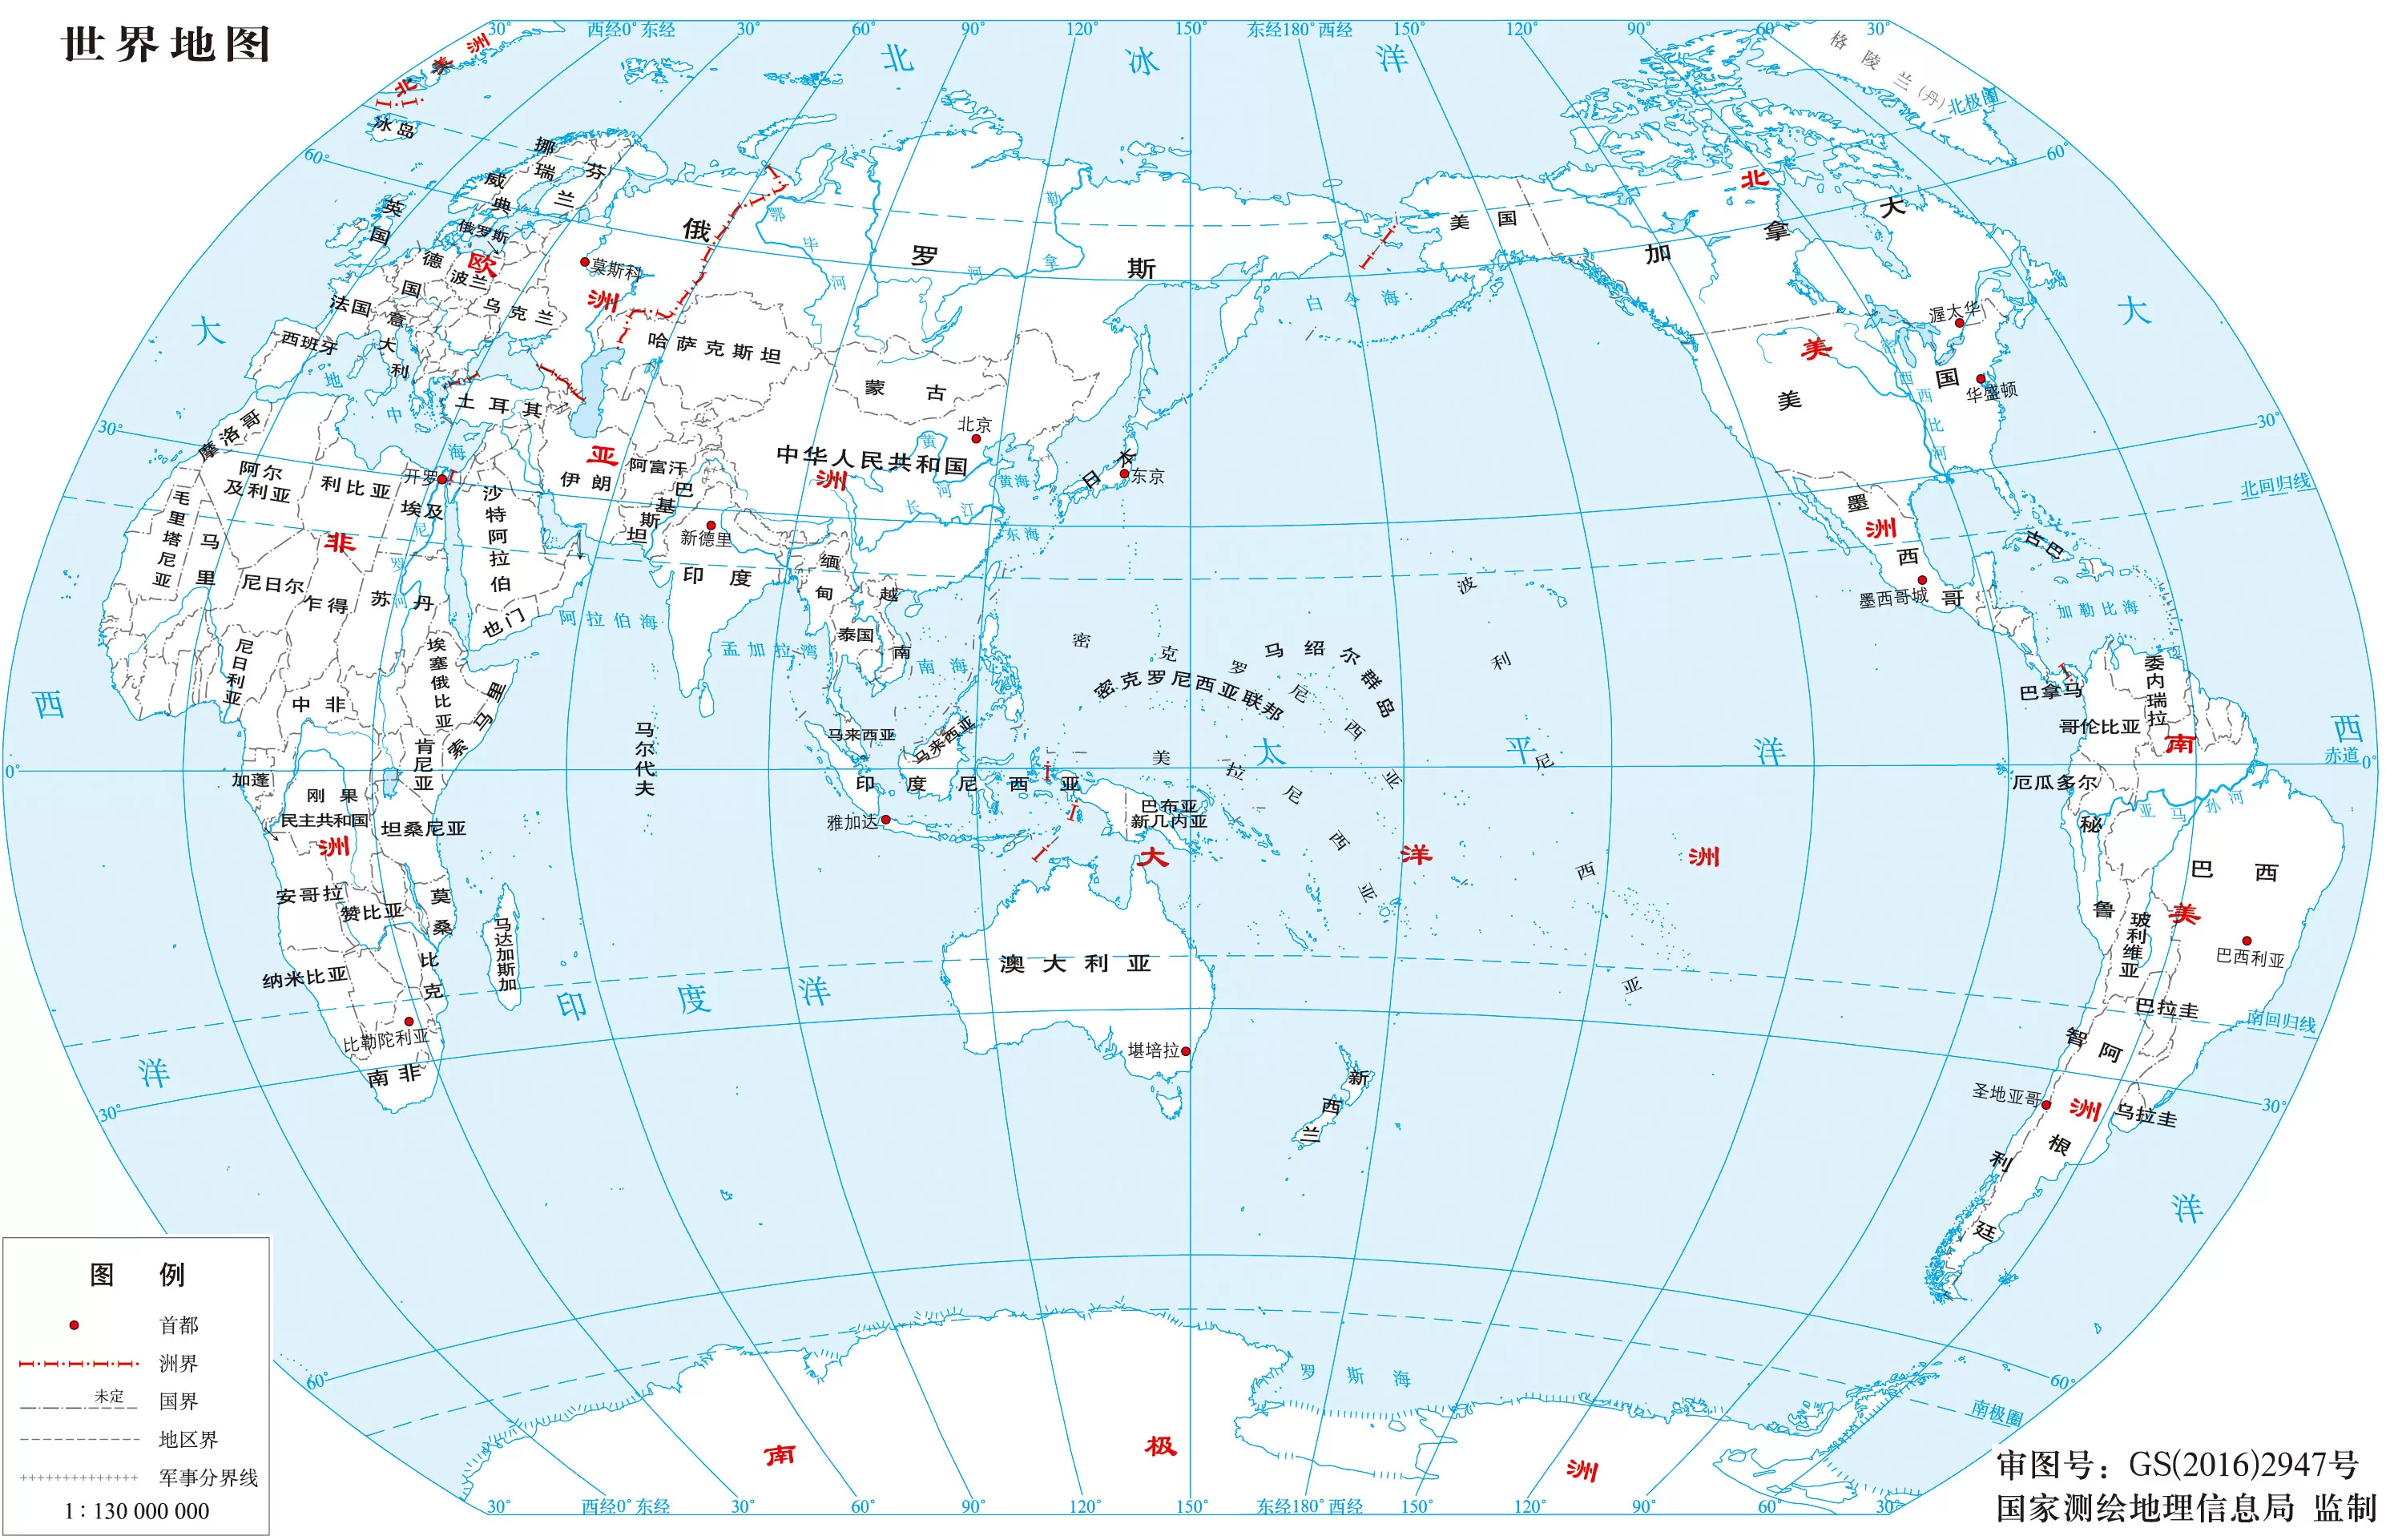 世界政区地图高清版大图 - 世界政区地图 - 地理教师网